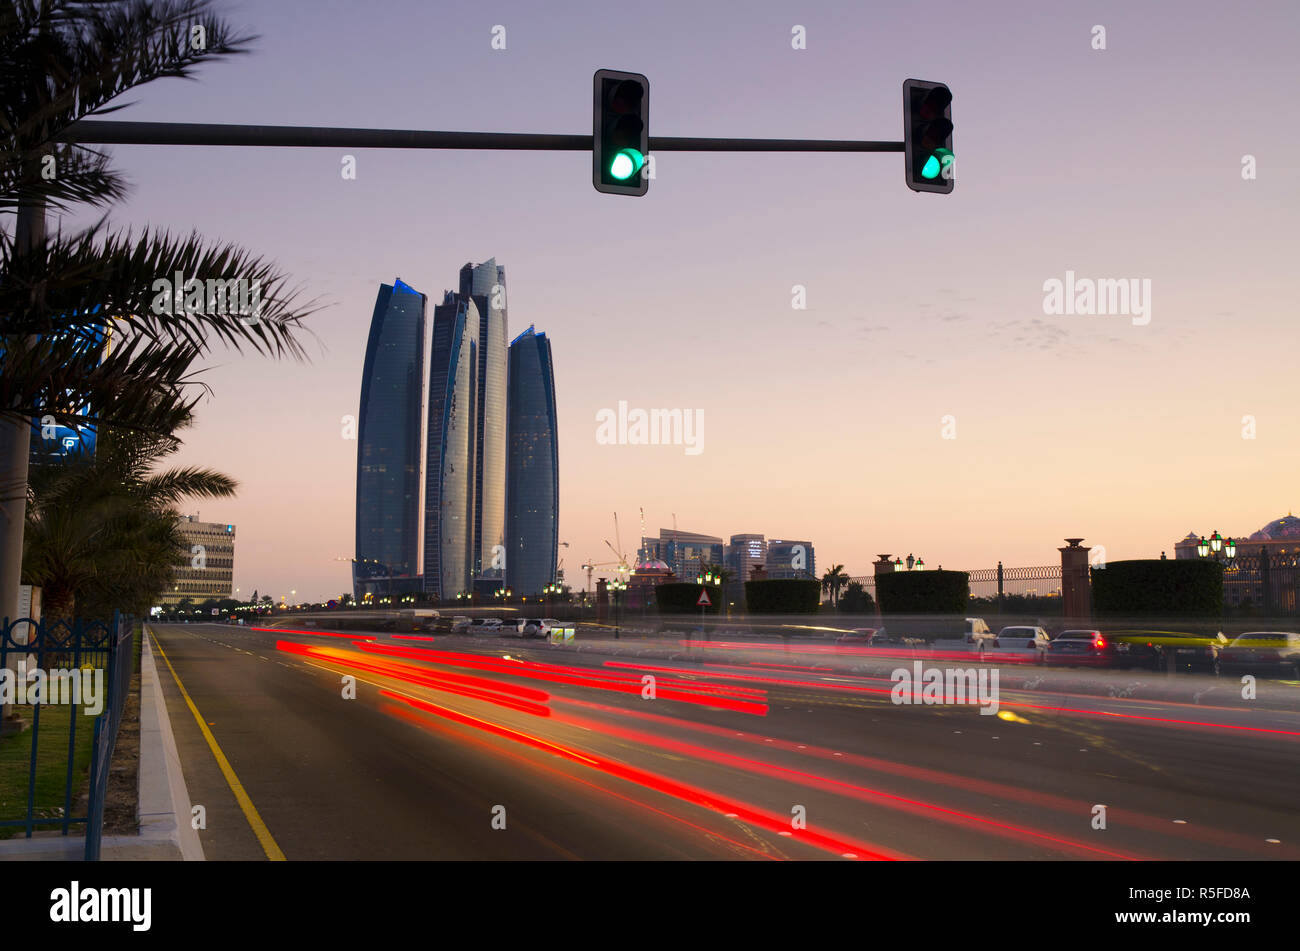 United Arab Emirates, Abu Dhabi, Etihad Towers Stock Photo